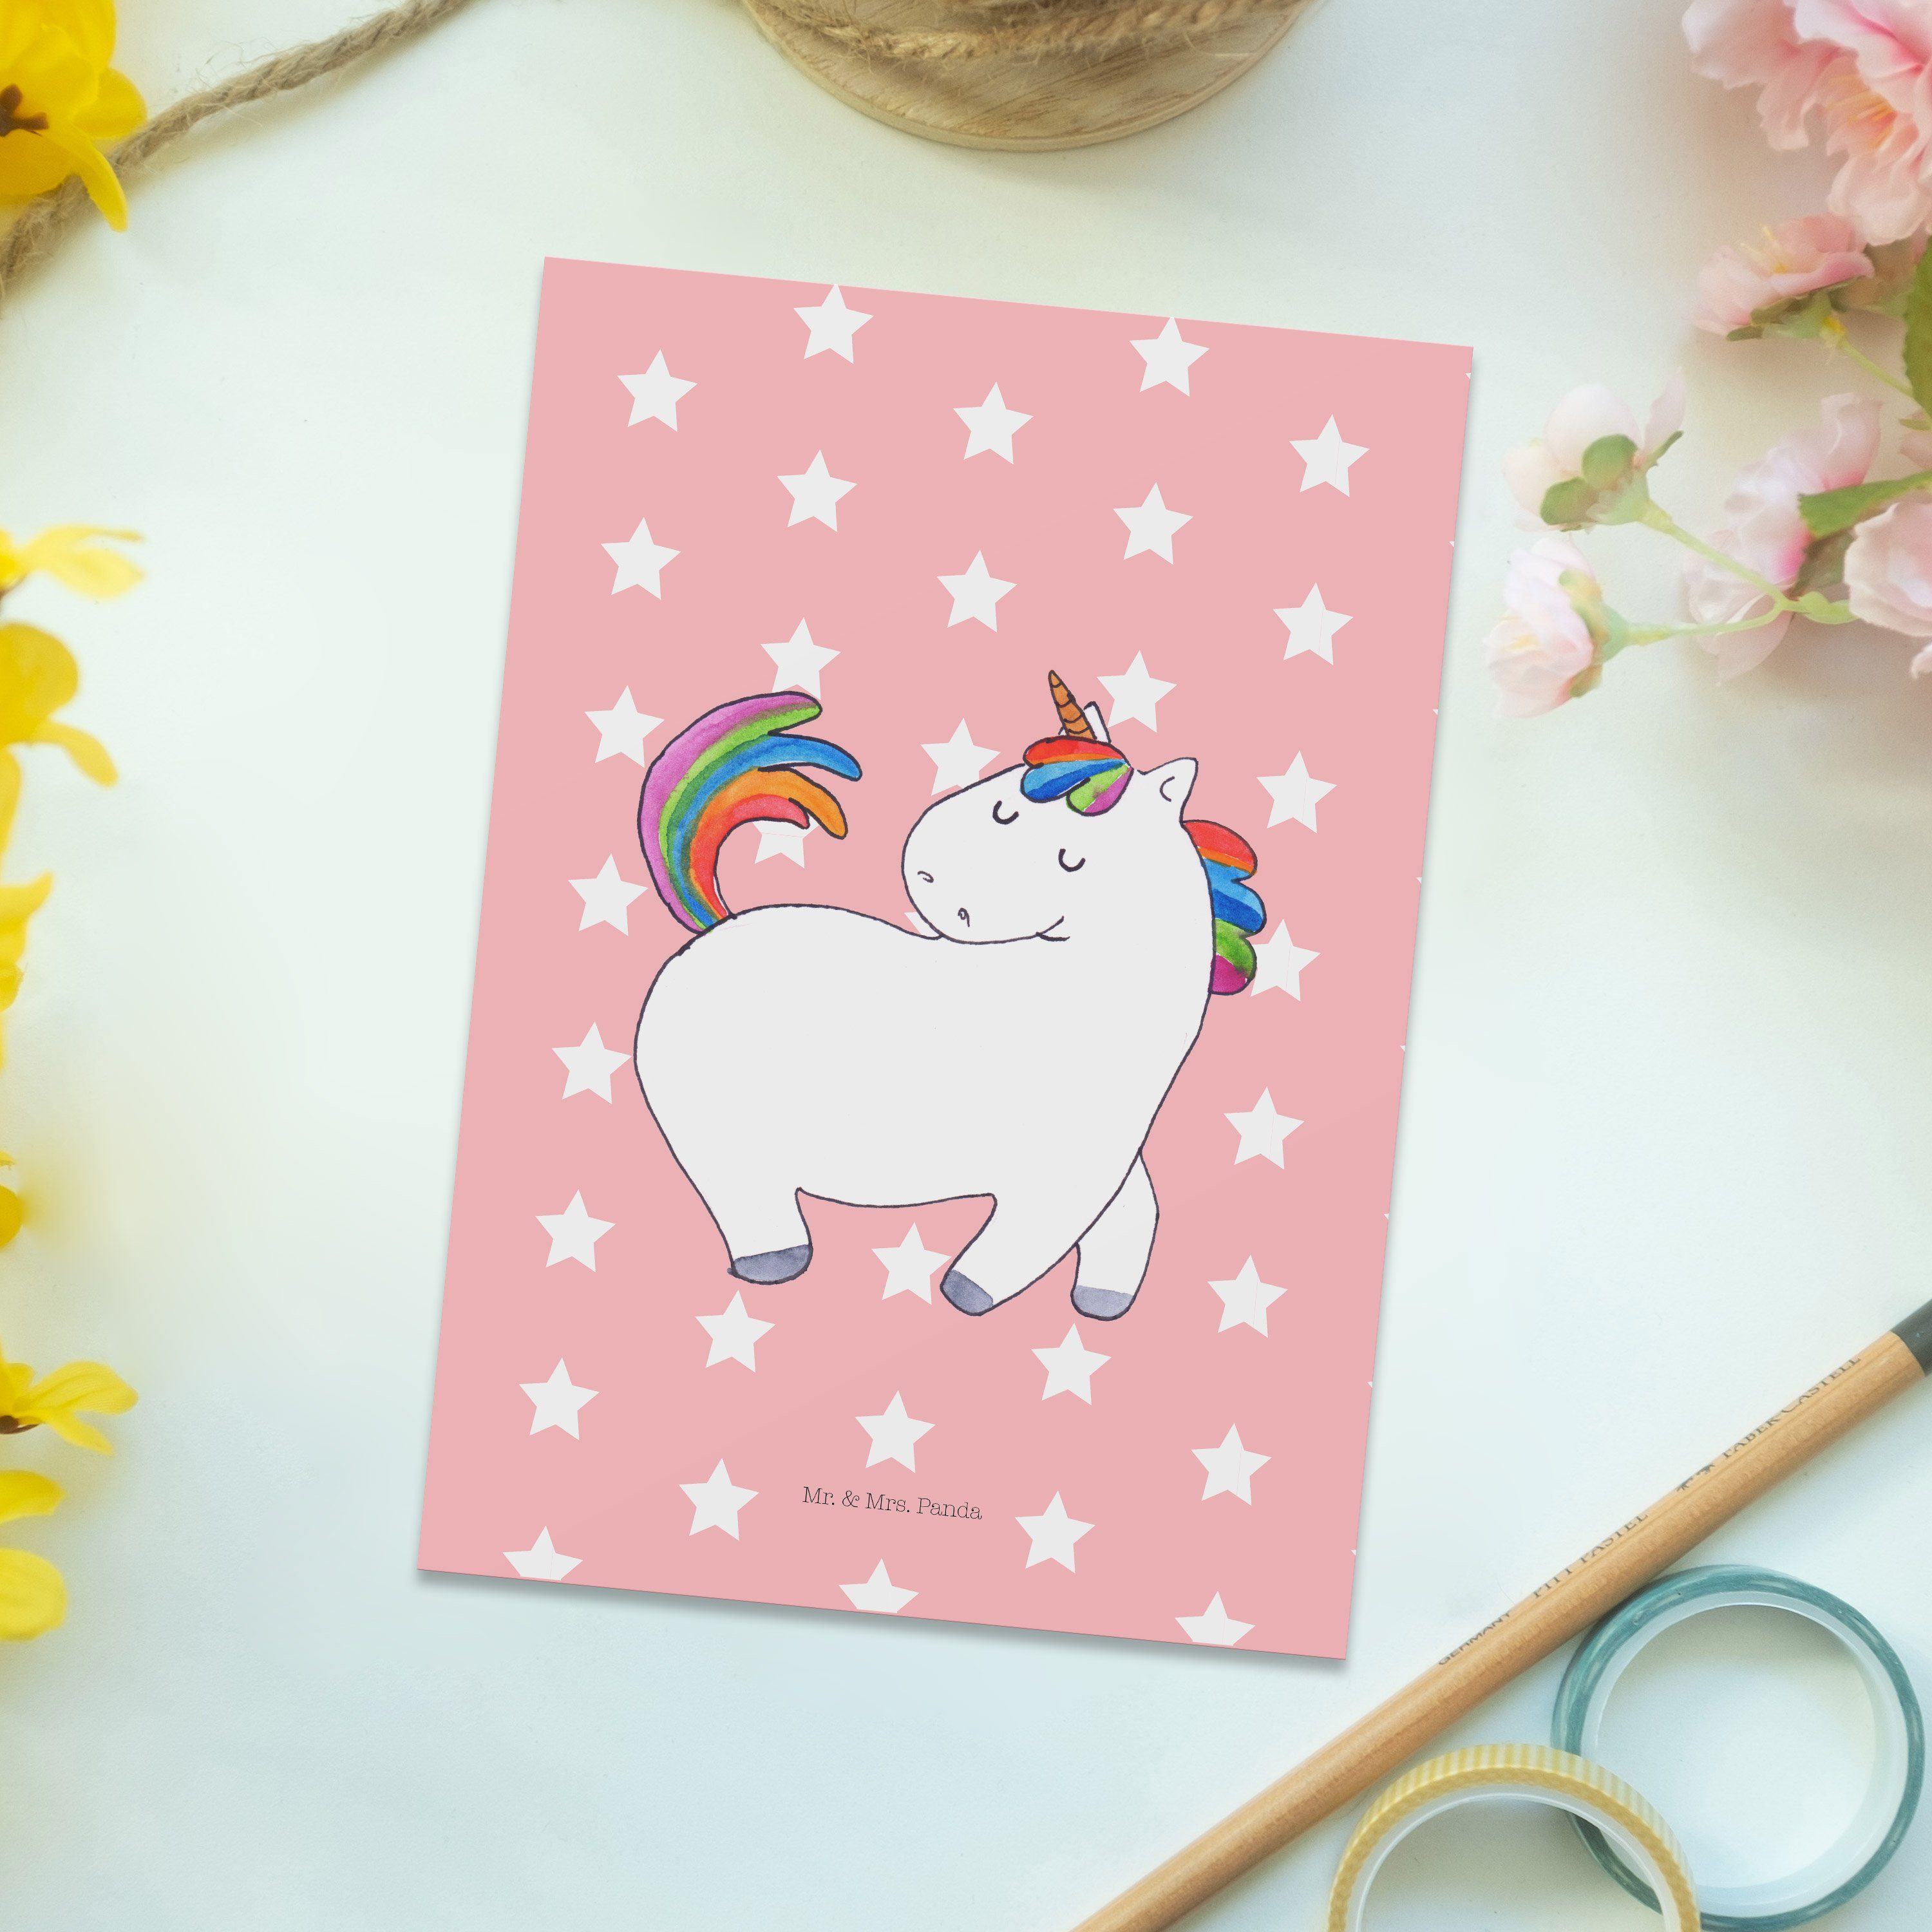 Mr. & Mrs. Panda Pastell Rot Pegasus, Einhorn Geschenk, stolzierend Einhö - - Postkarte Unicorn